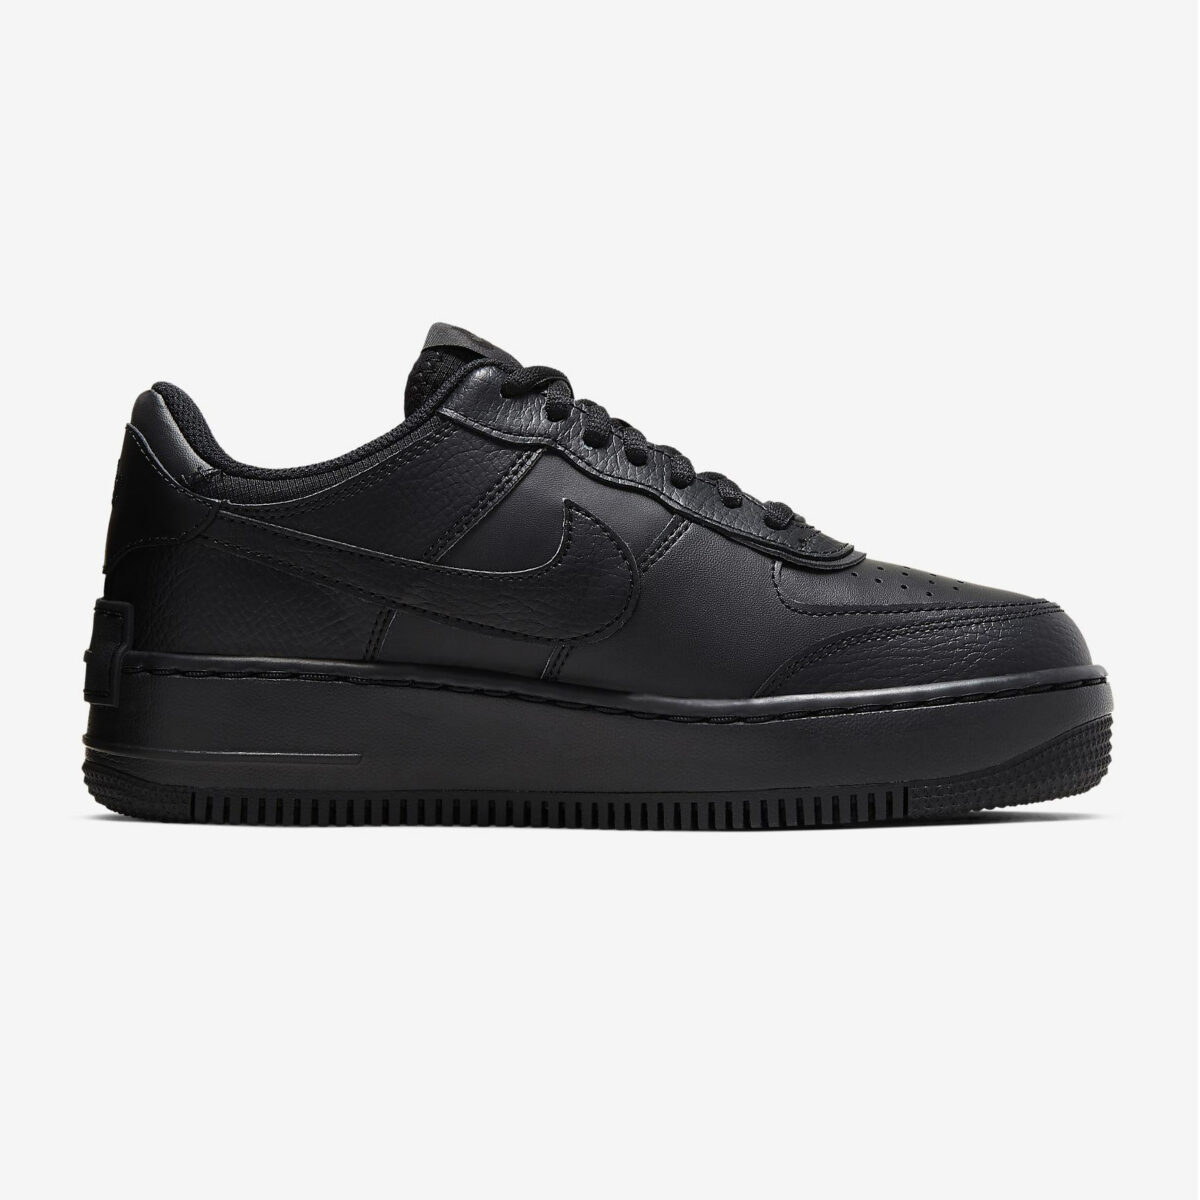 Damen Schuhe Nike Air Force 1 07 Shadow schwarz 105 Euro